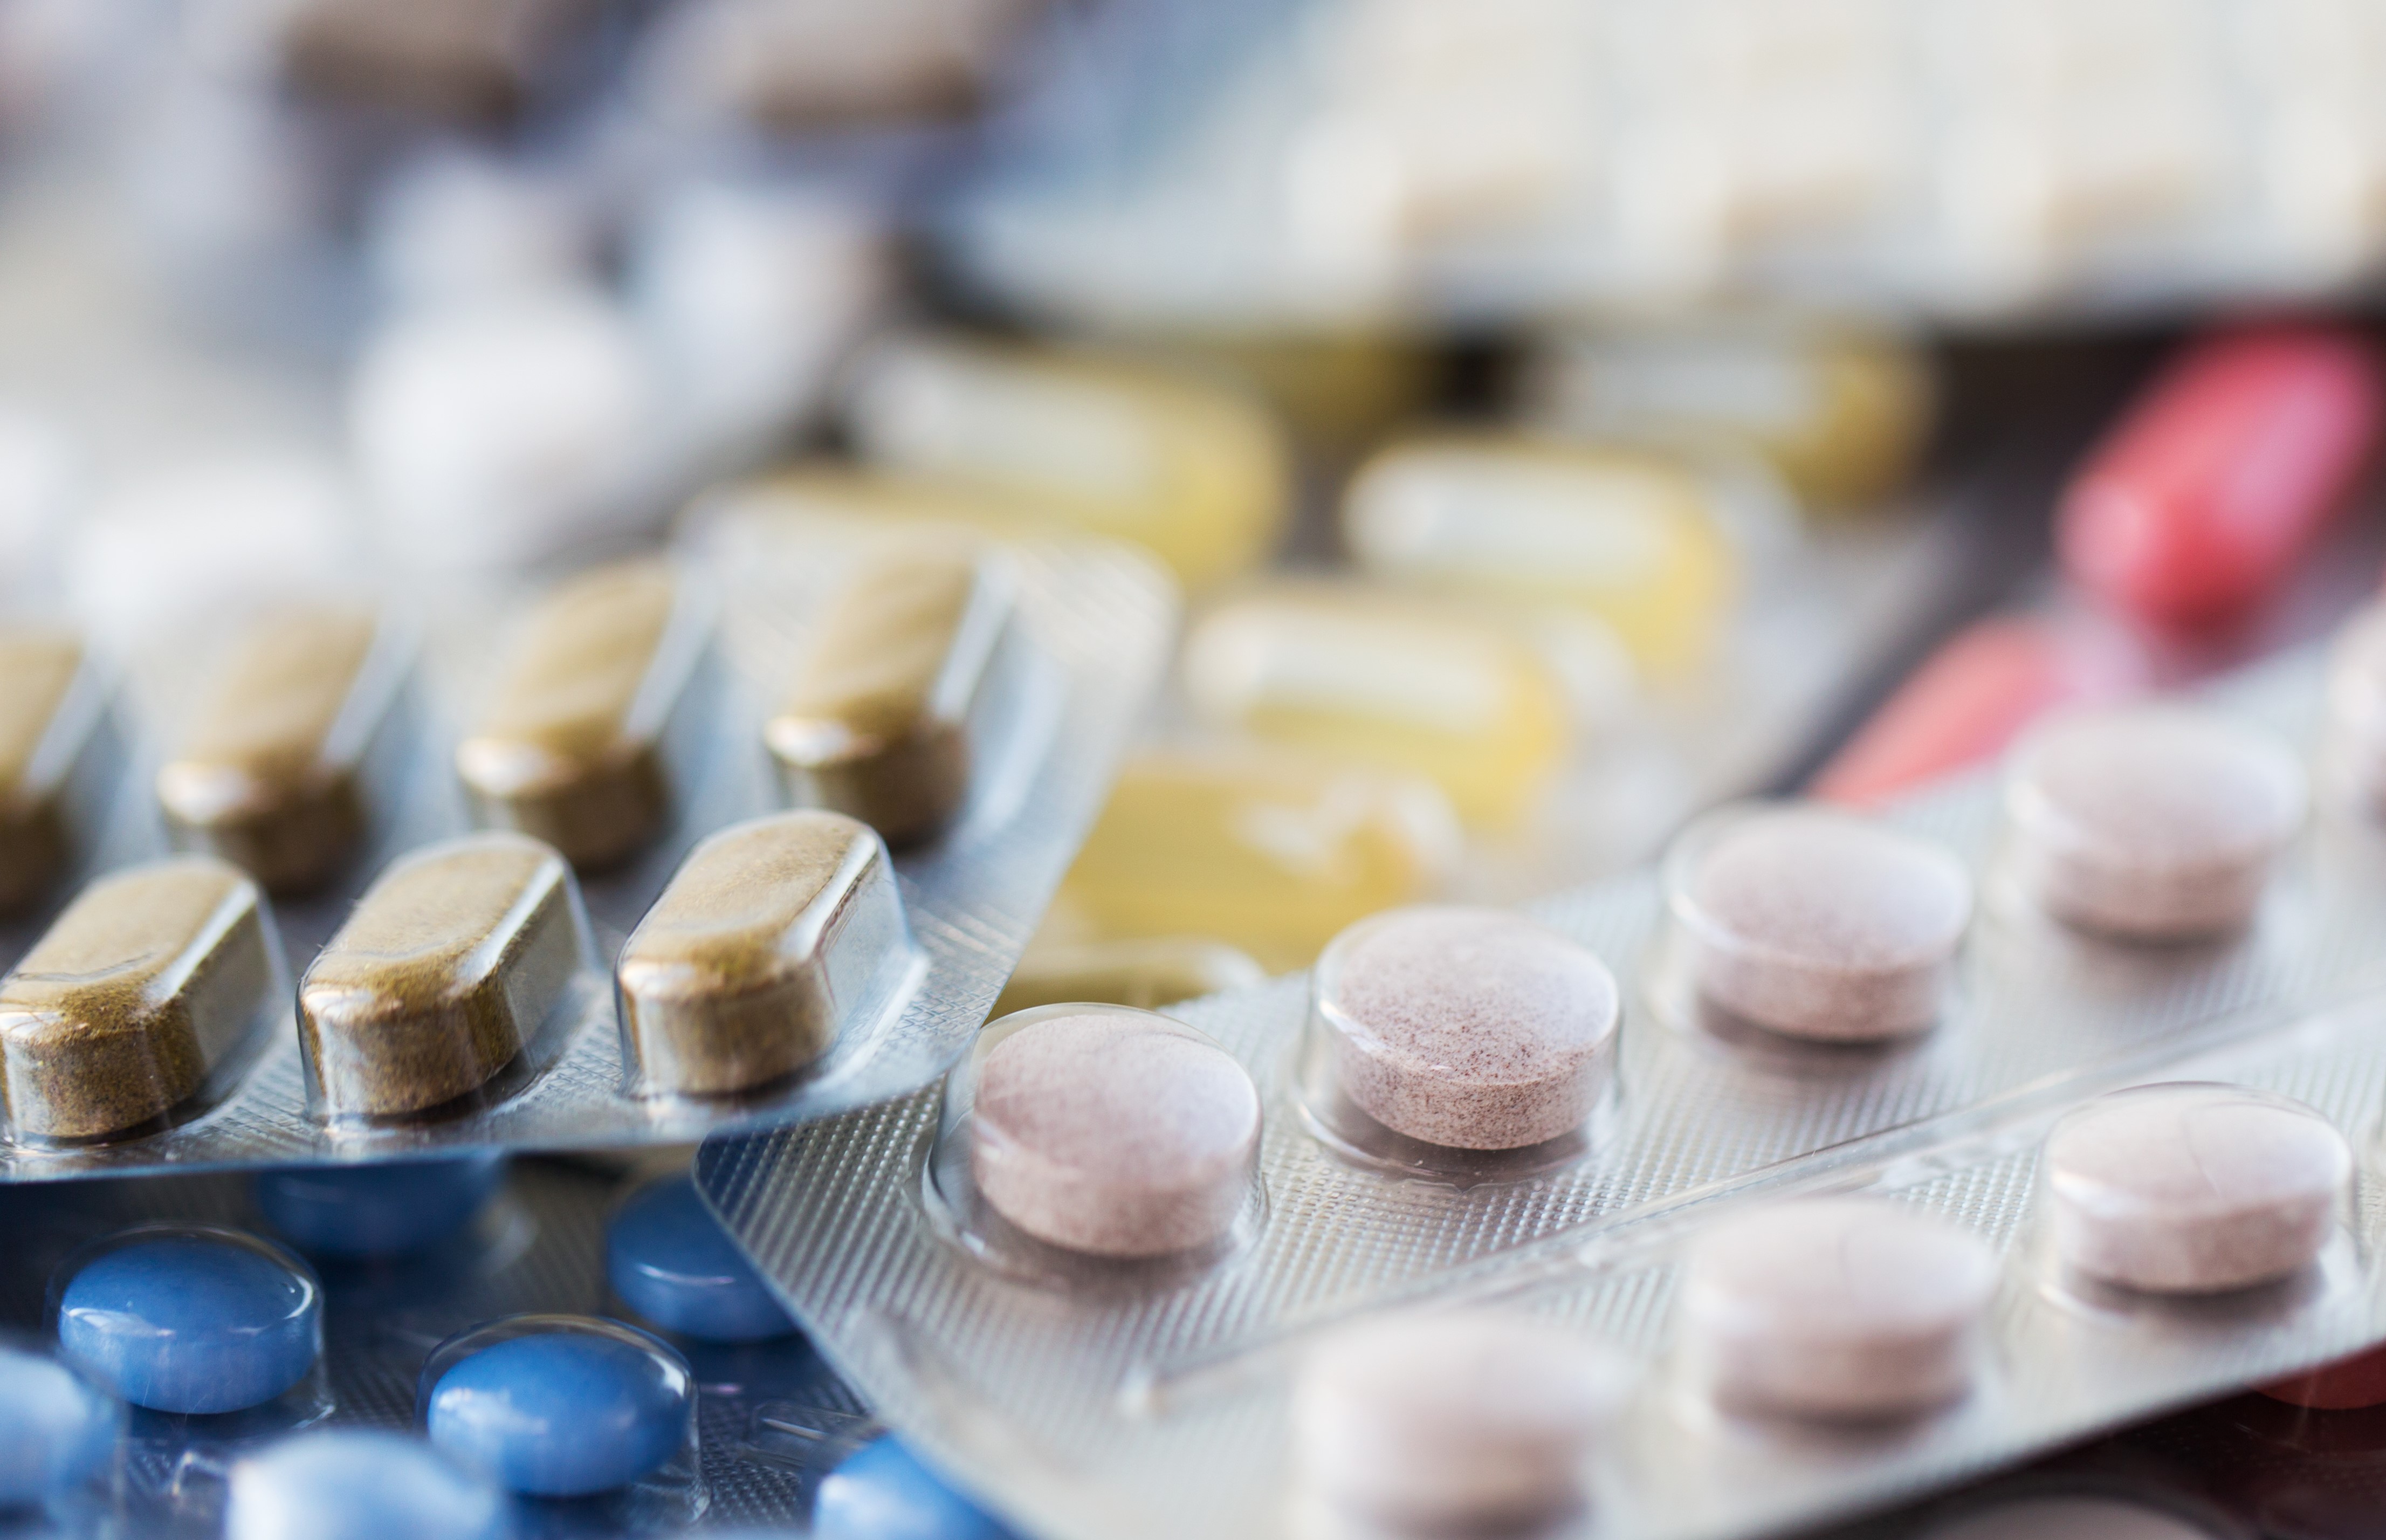 Anbud365: Kjøp av legemidler og apotekvarer bidrar med stor miljøpåvirkning